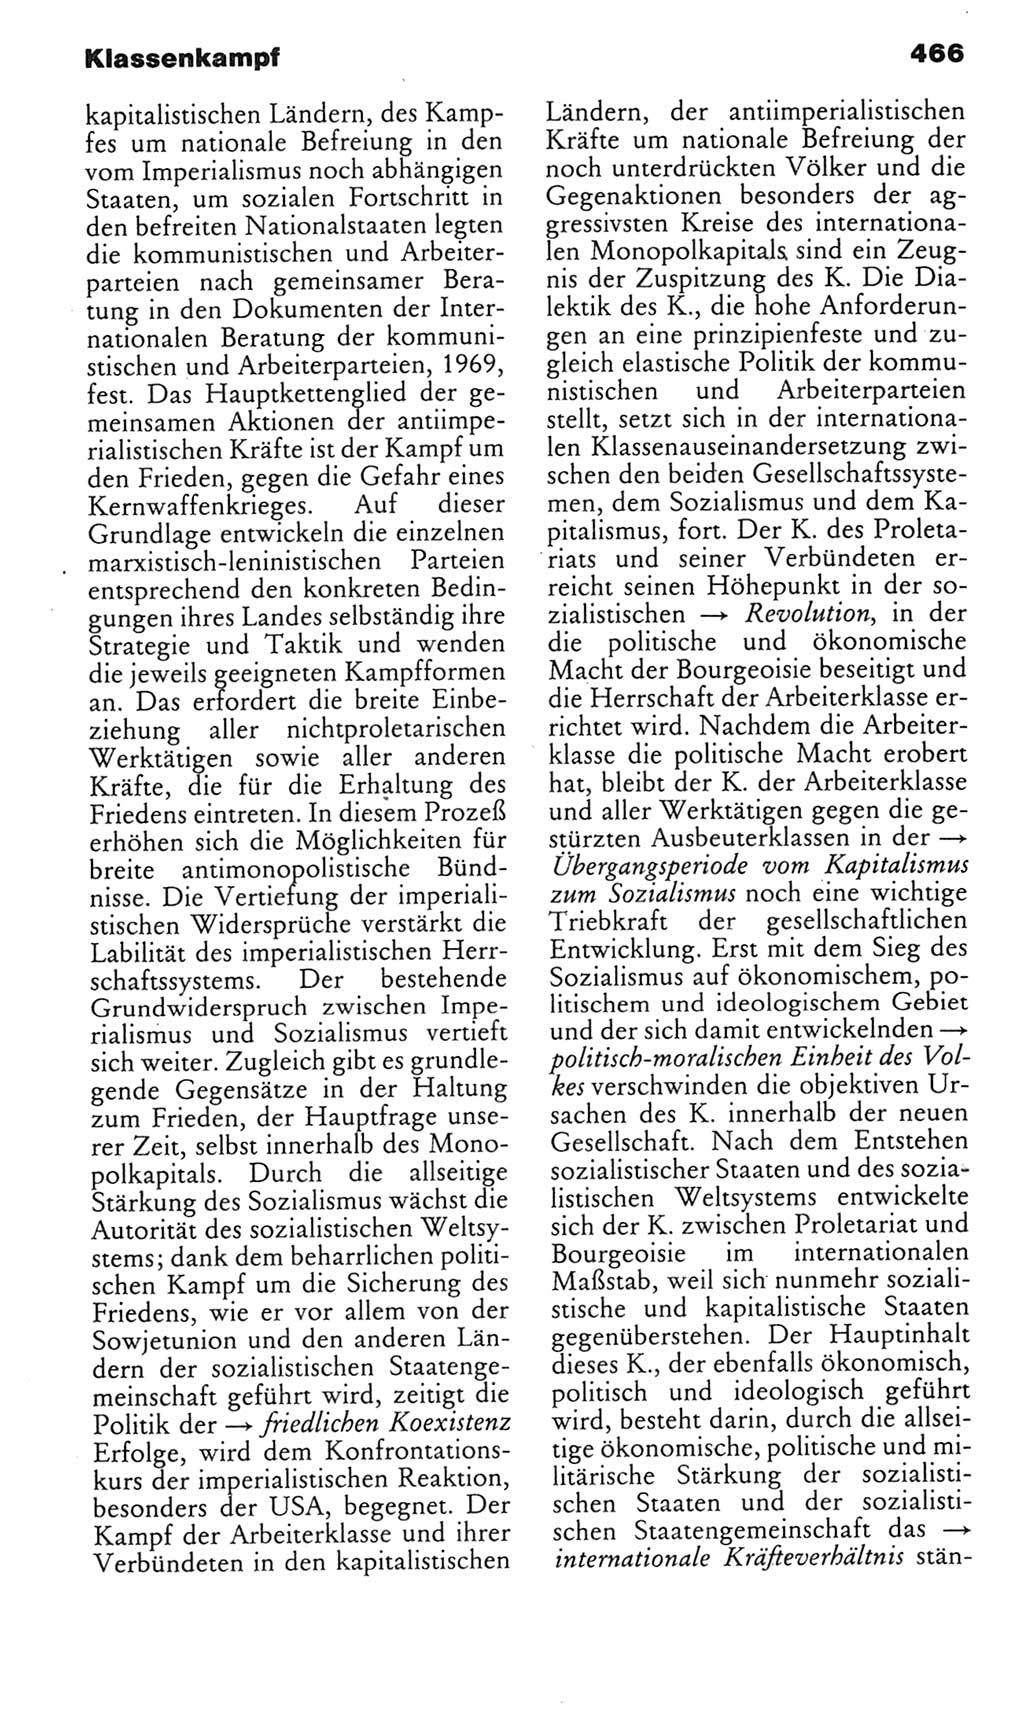 Kleines politisches Wörterbuch [Deutsche Demokratische Republik (DDR)] 1985, Seite 466 (Kl. pol. Wb. DDR 1985, S. 466)